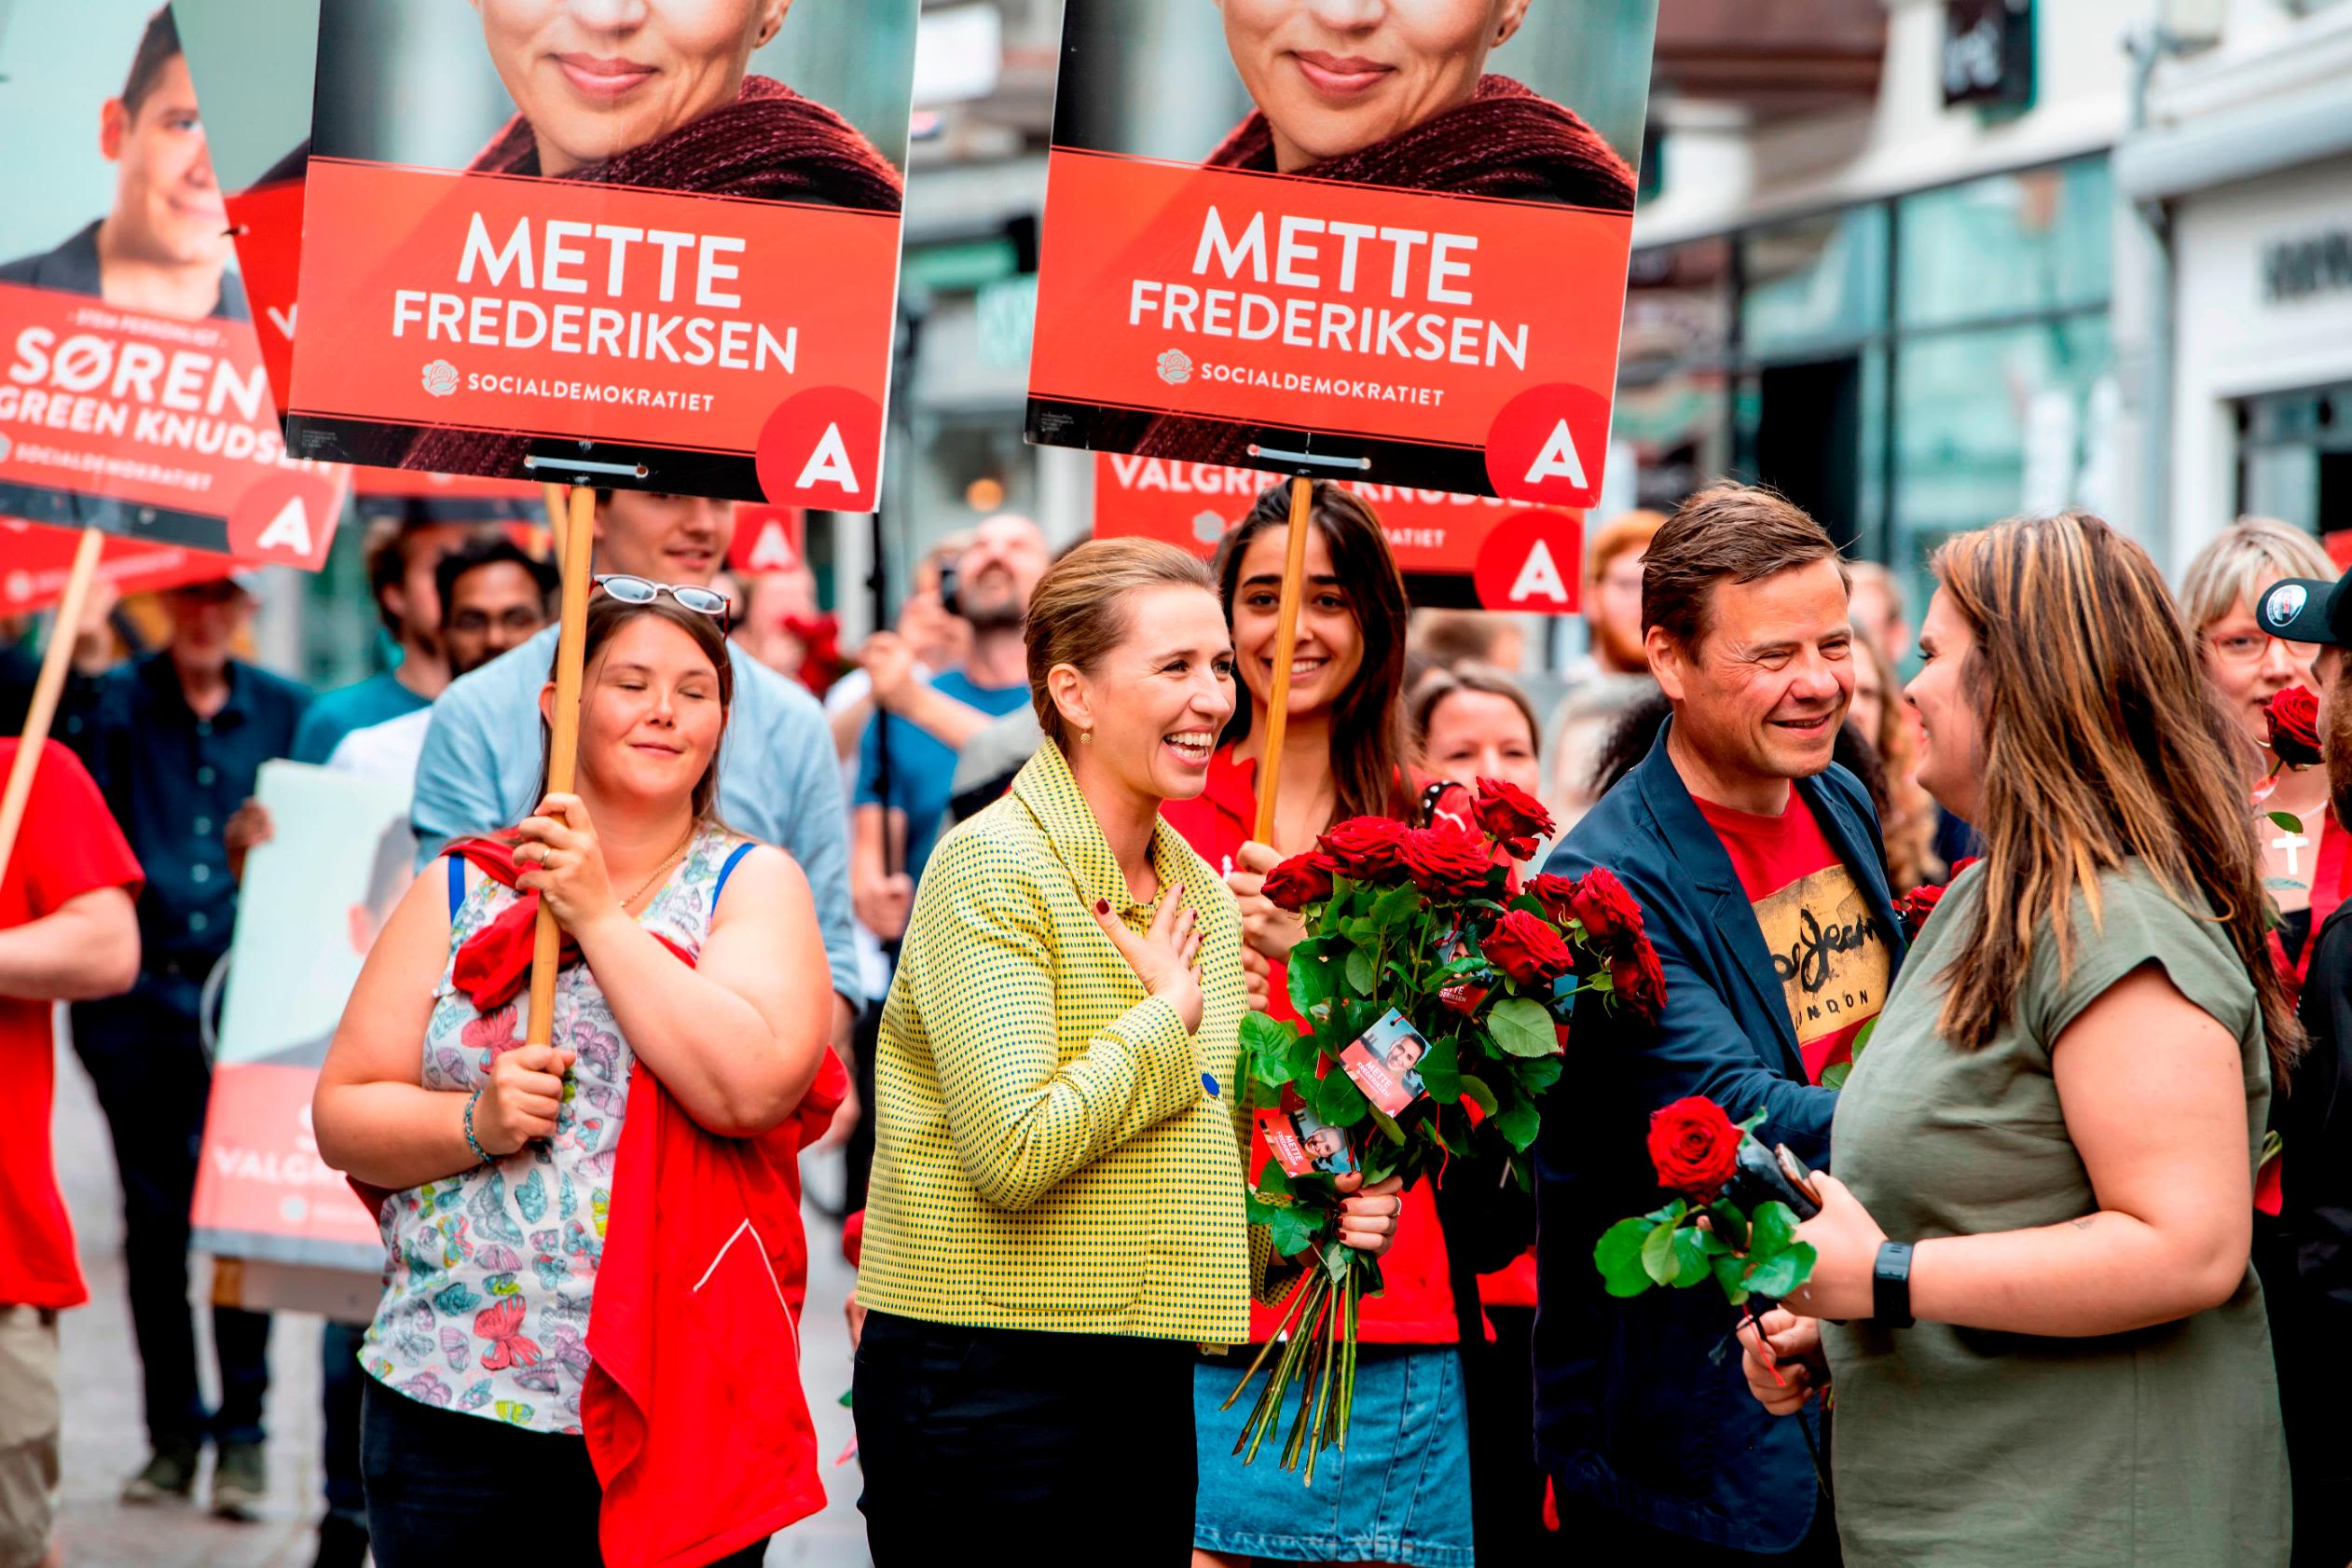 Mette Frederiksen Denmark's youngest-ever prime minister | CNN